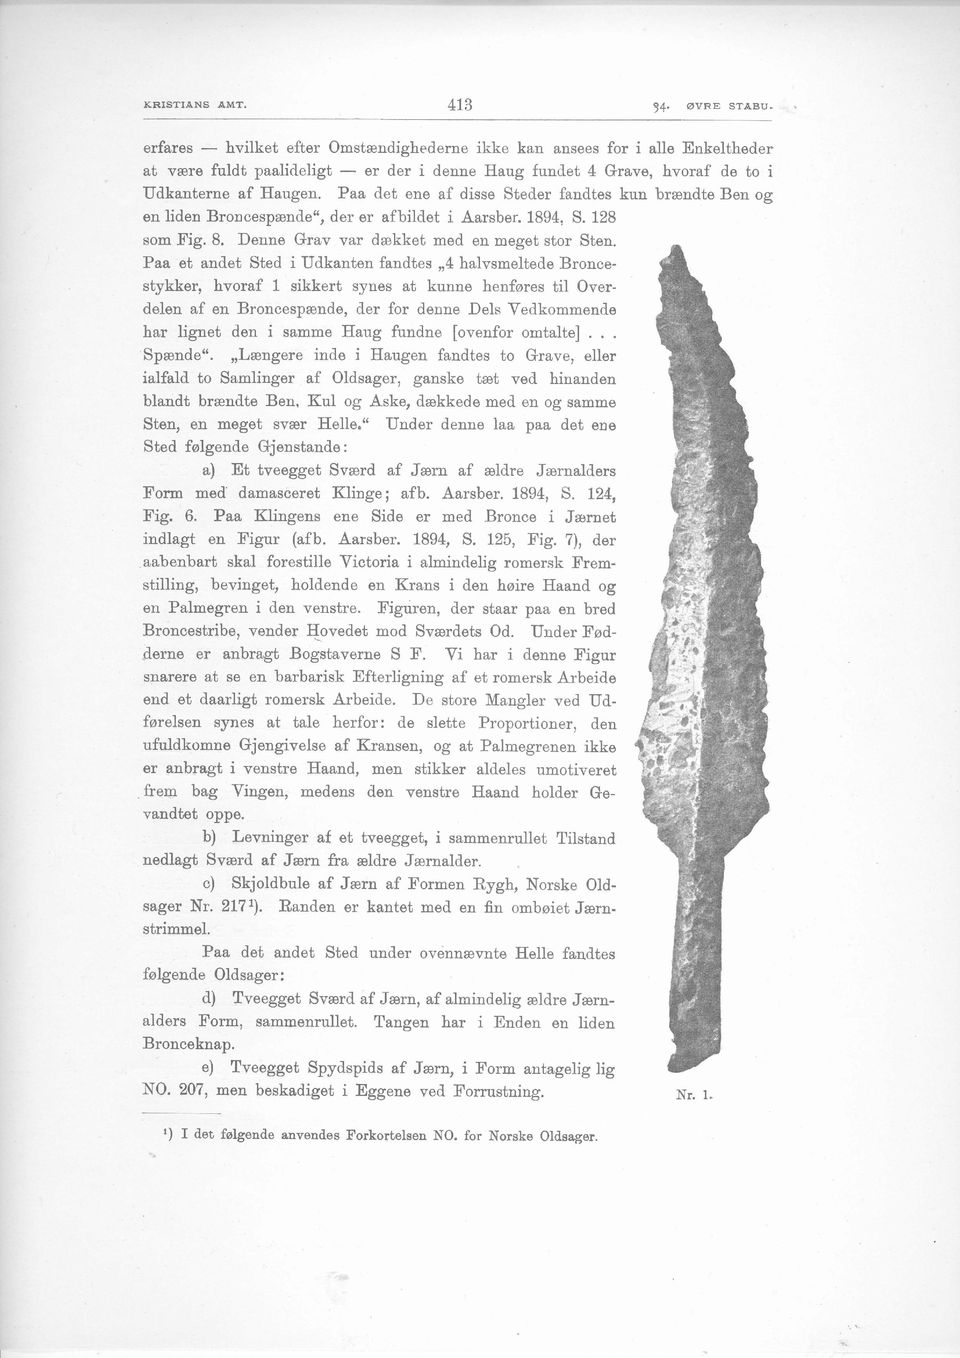 Paa det ene af disse Stecler fandtes kun brandte Ben og en liden Broncesp&nd"e", der er afbildet i Aarsber. 1894, S. 128 som Fig. 8. Denne Grav var drekket med en meget stor Sten.